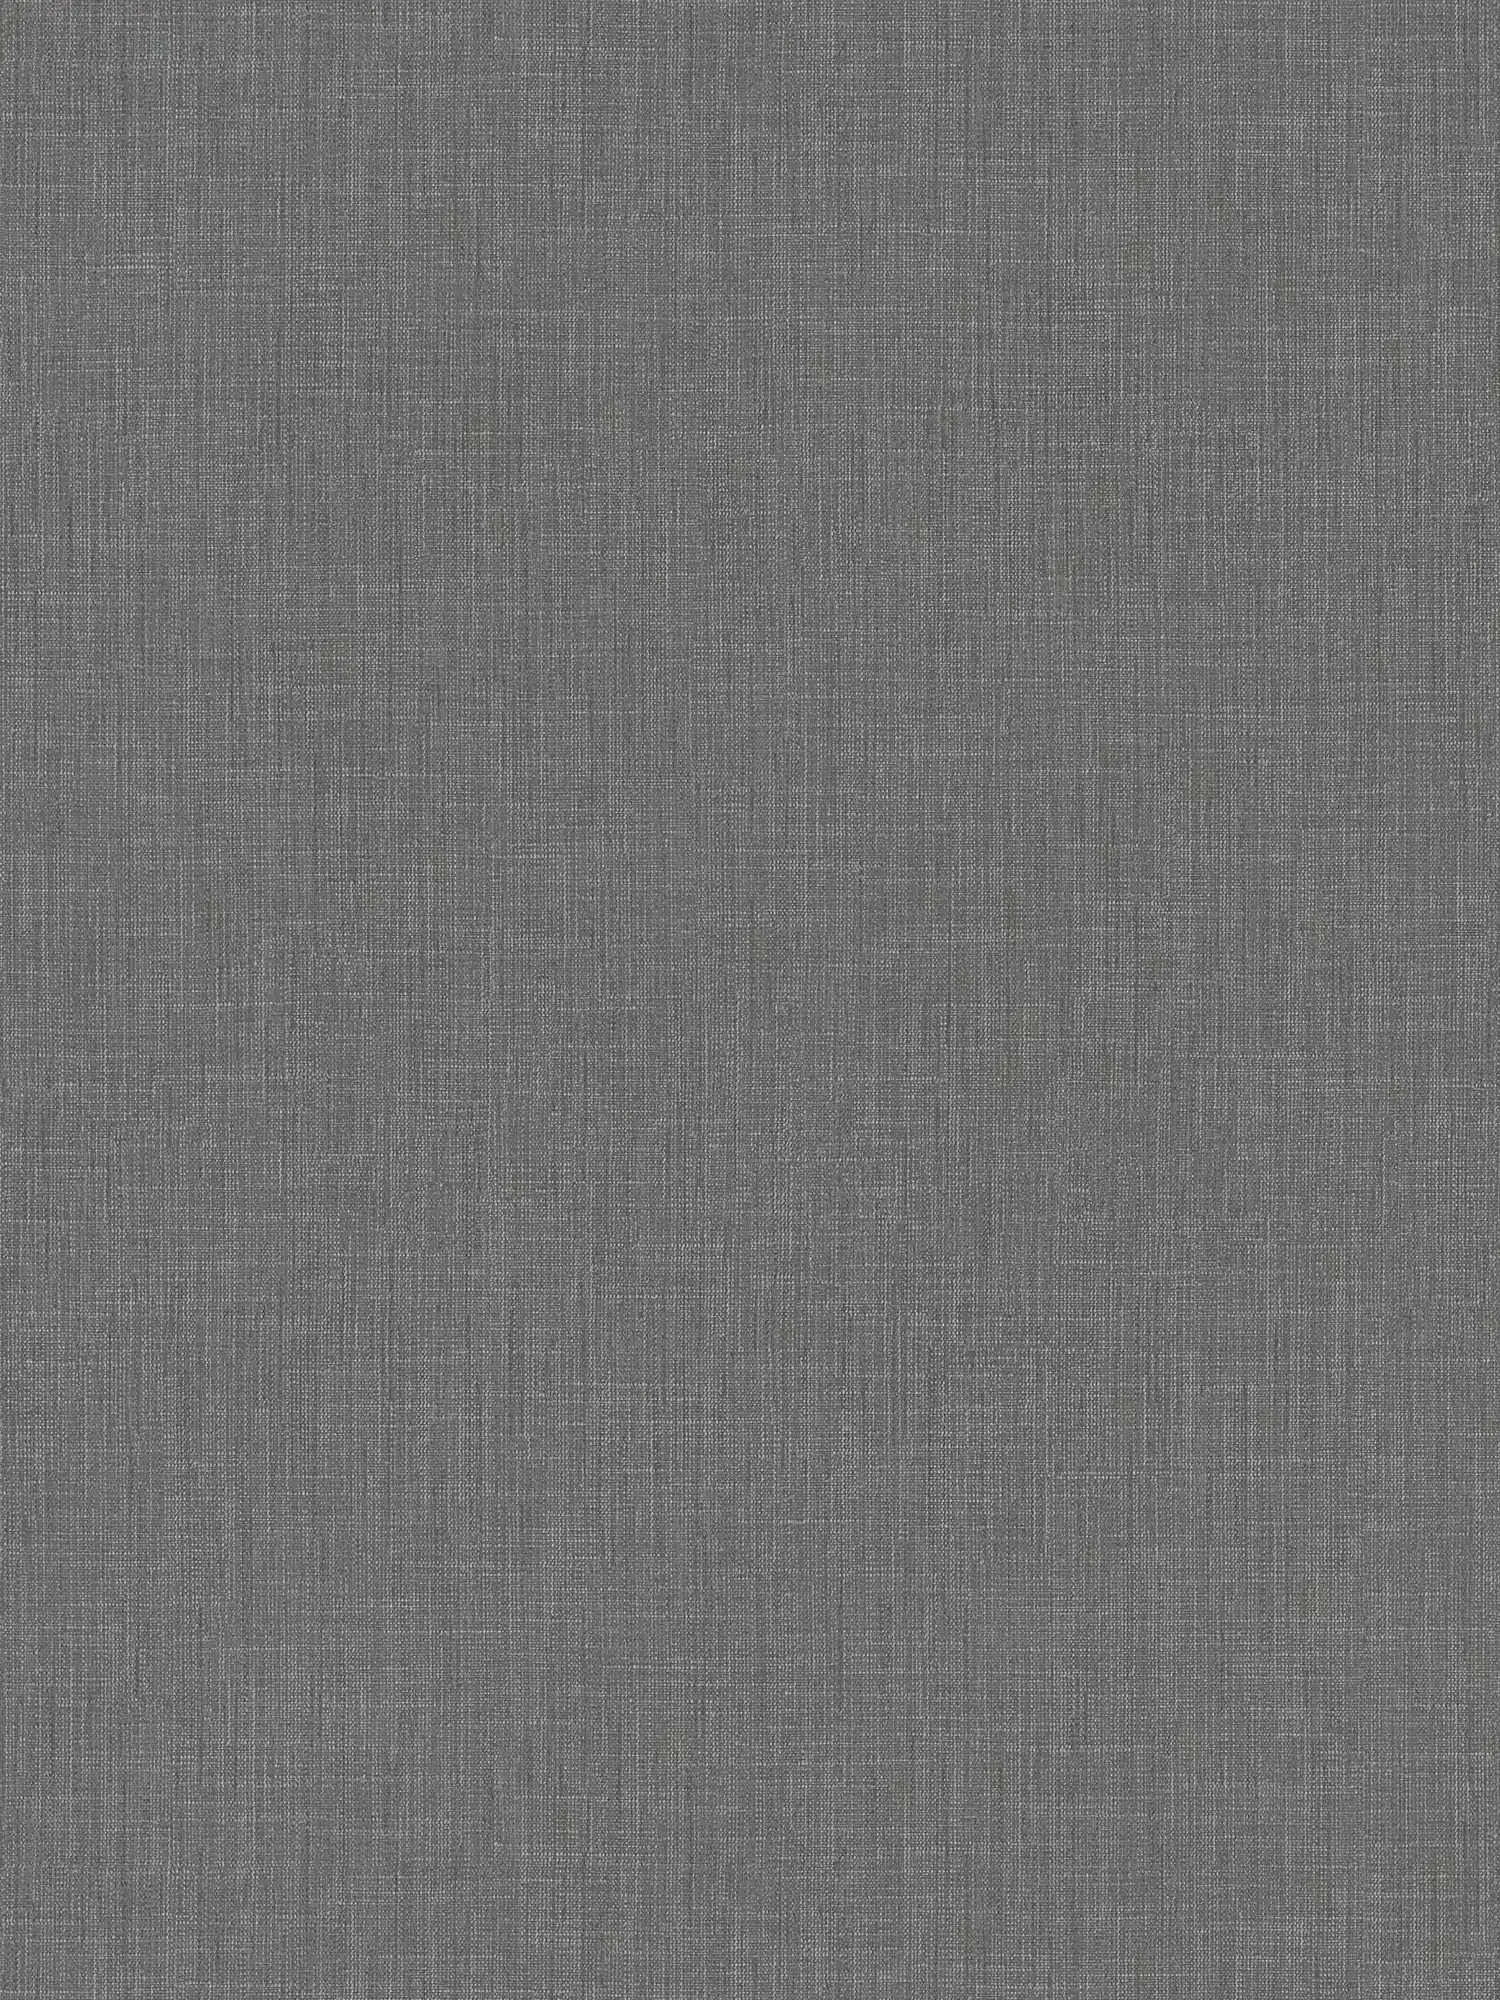 Behang grijs gevlekt met textielmotief in boucléstijl
